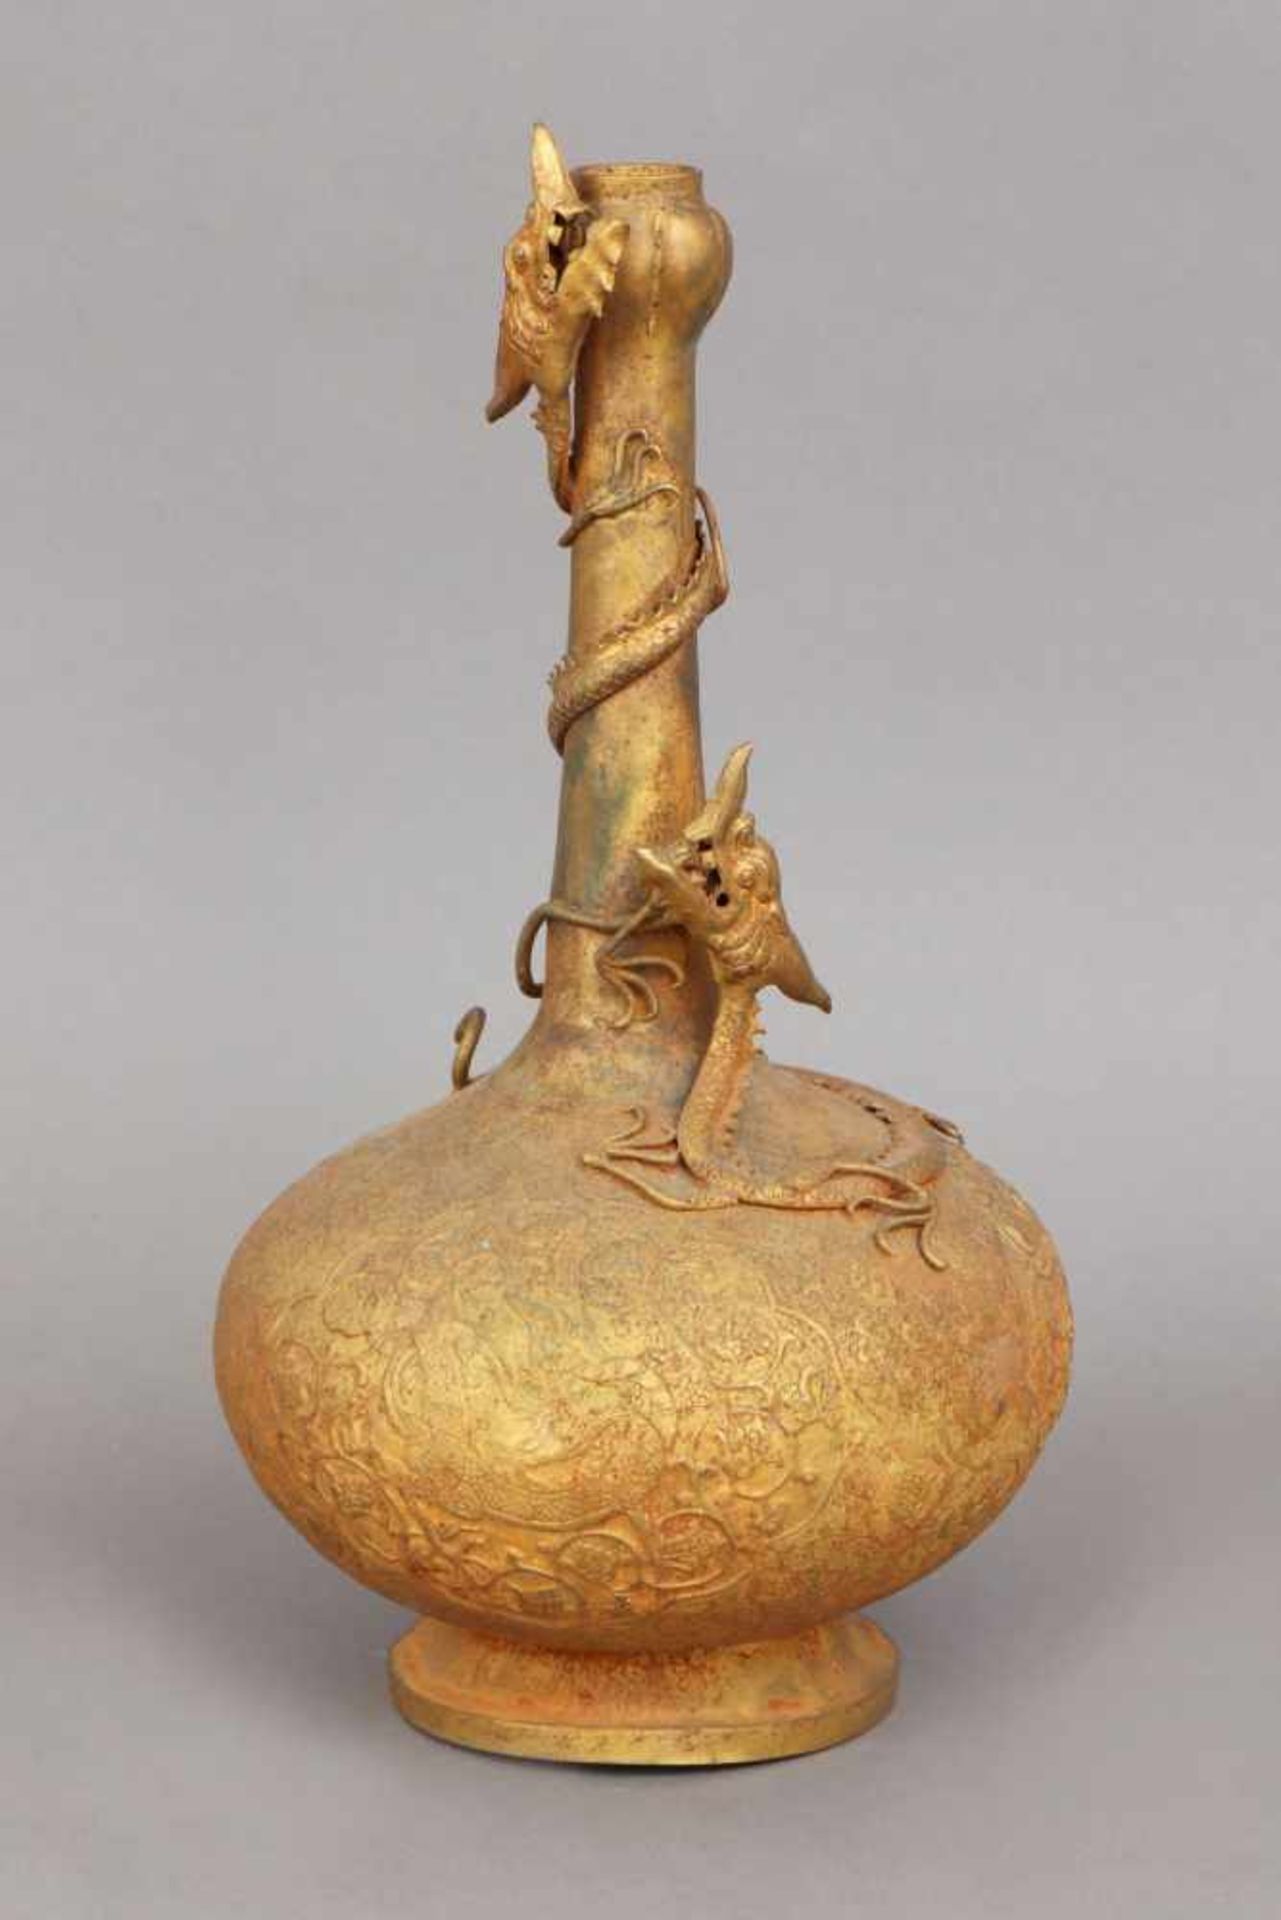 Chinesisches VasengefäßMetall (wohl Bronze und Blech), vergoldet, Alter unbestimmt, bauchiger Korpus